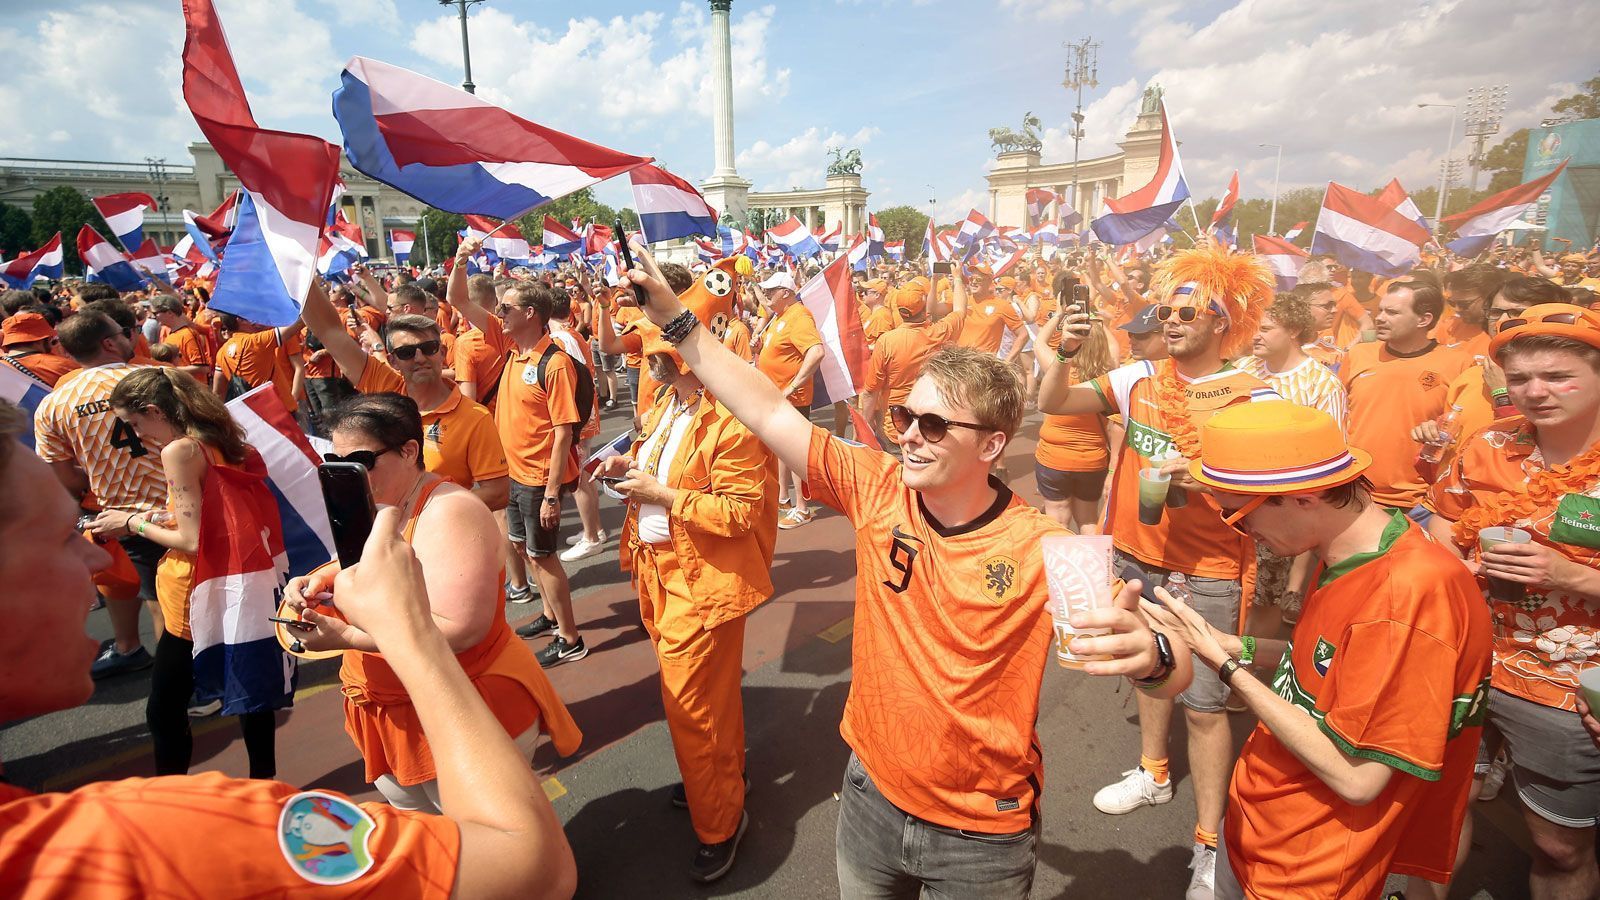 
                <strong>Niederlande vs. Tschechien - die Fans sind bereit</strong><br>
                Außerhalb der Arena von Budapest ist alles für ein Fußballfest angerichtet.
              